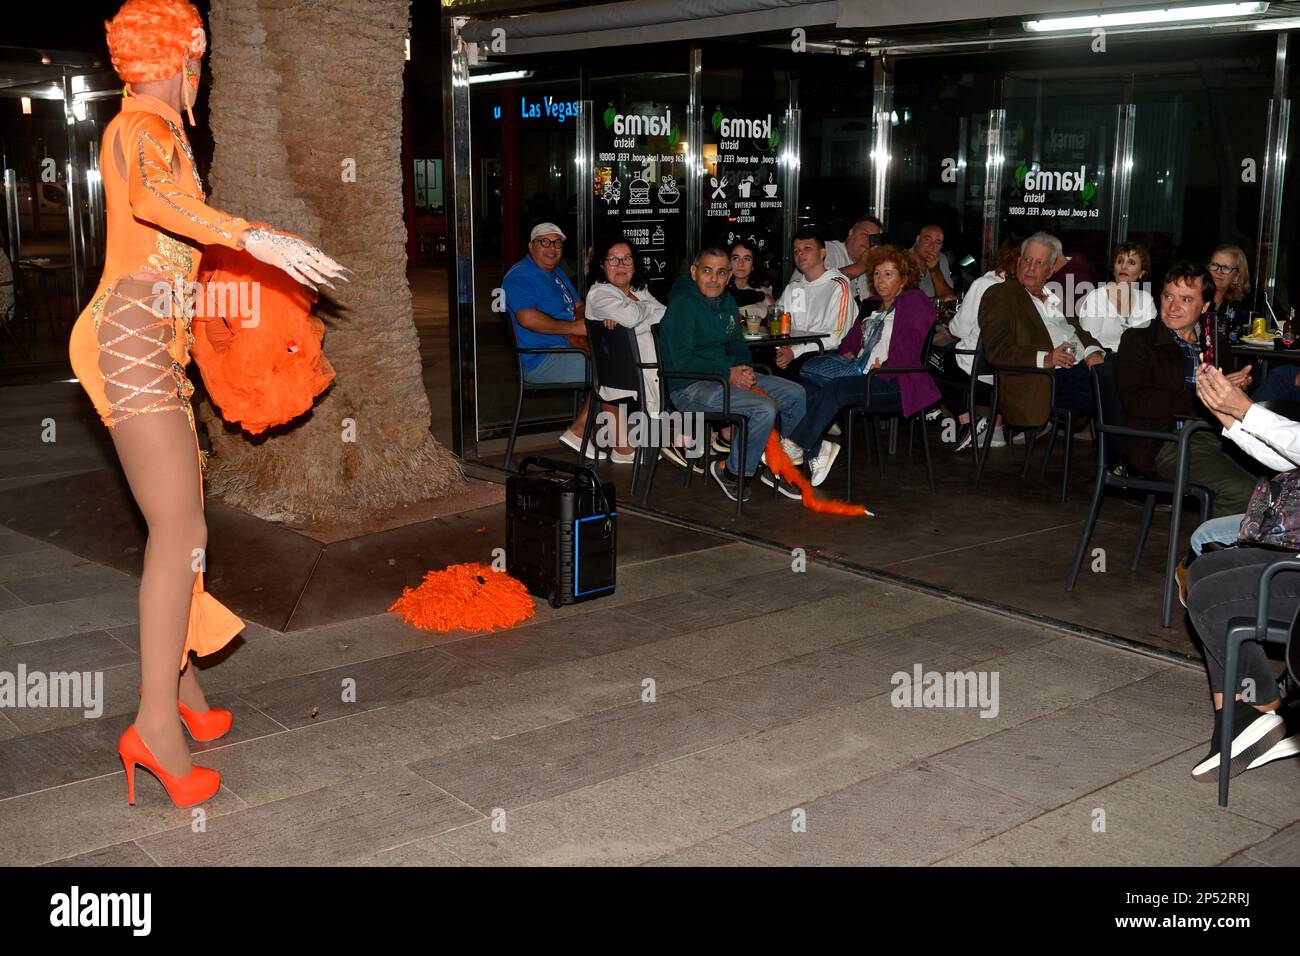 Drag artist, street busker in burlesque evening performance at outside bar (Sala de juego Las Vegas) in Arinaga, Gran Canaria Stock Photo